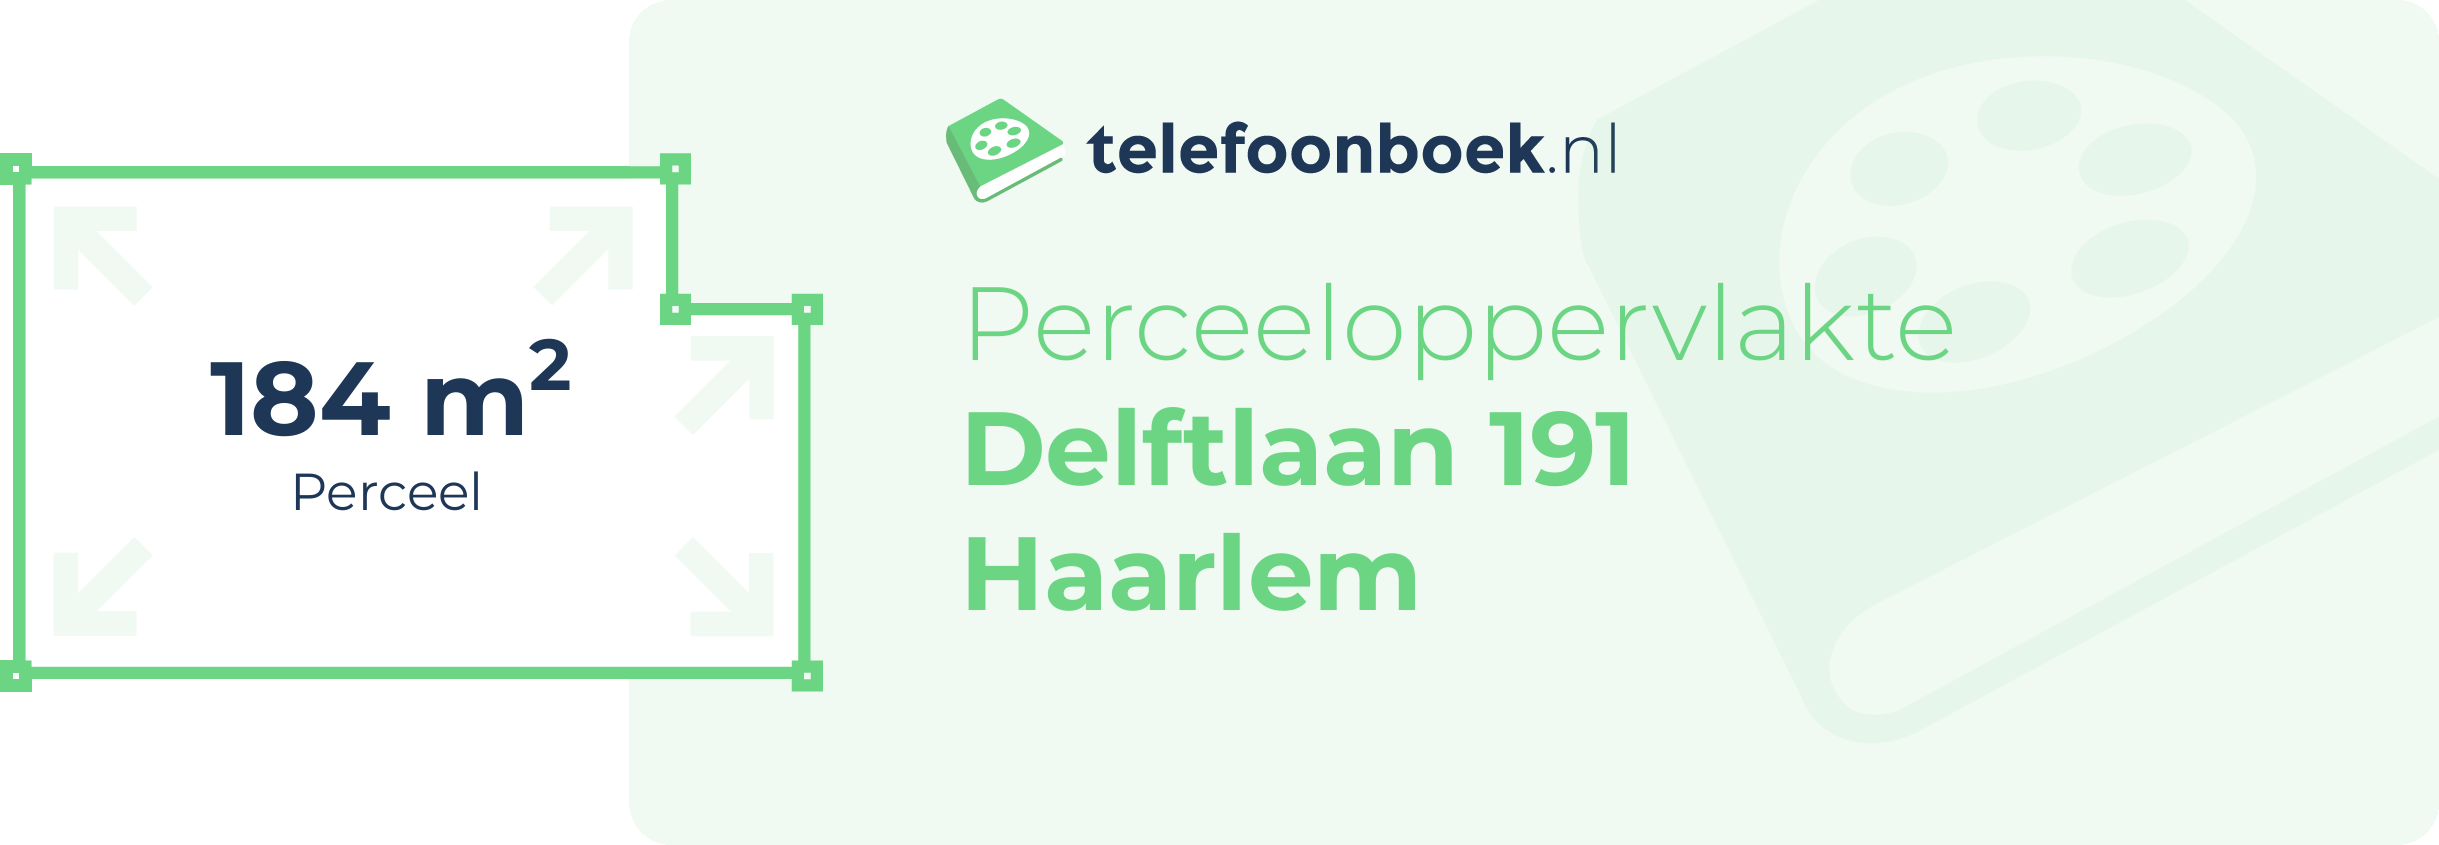 Perceeloppervlakte Delftlaan 191 Haarlem